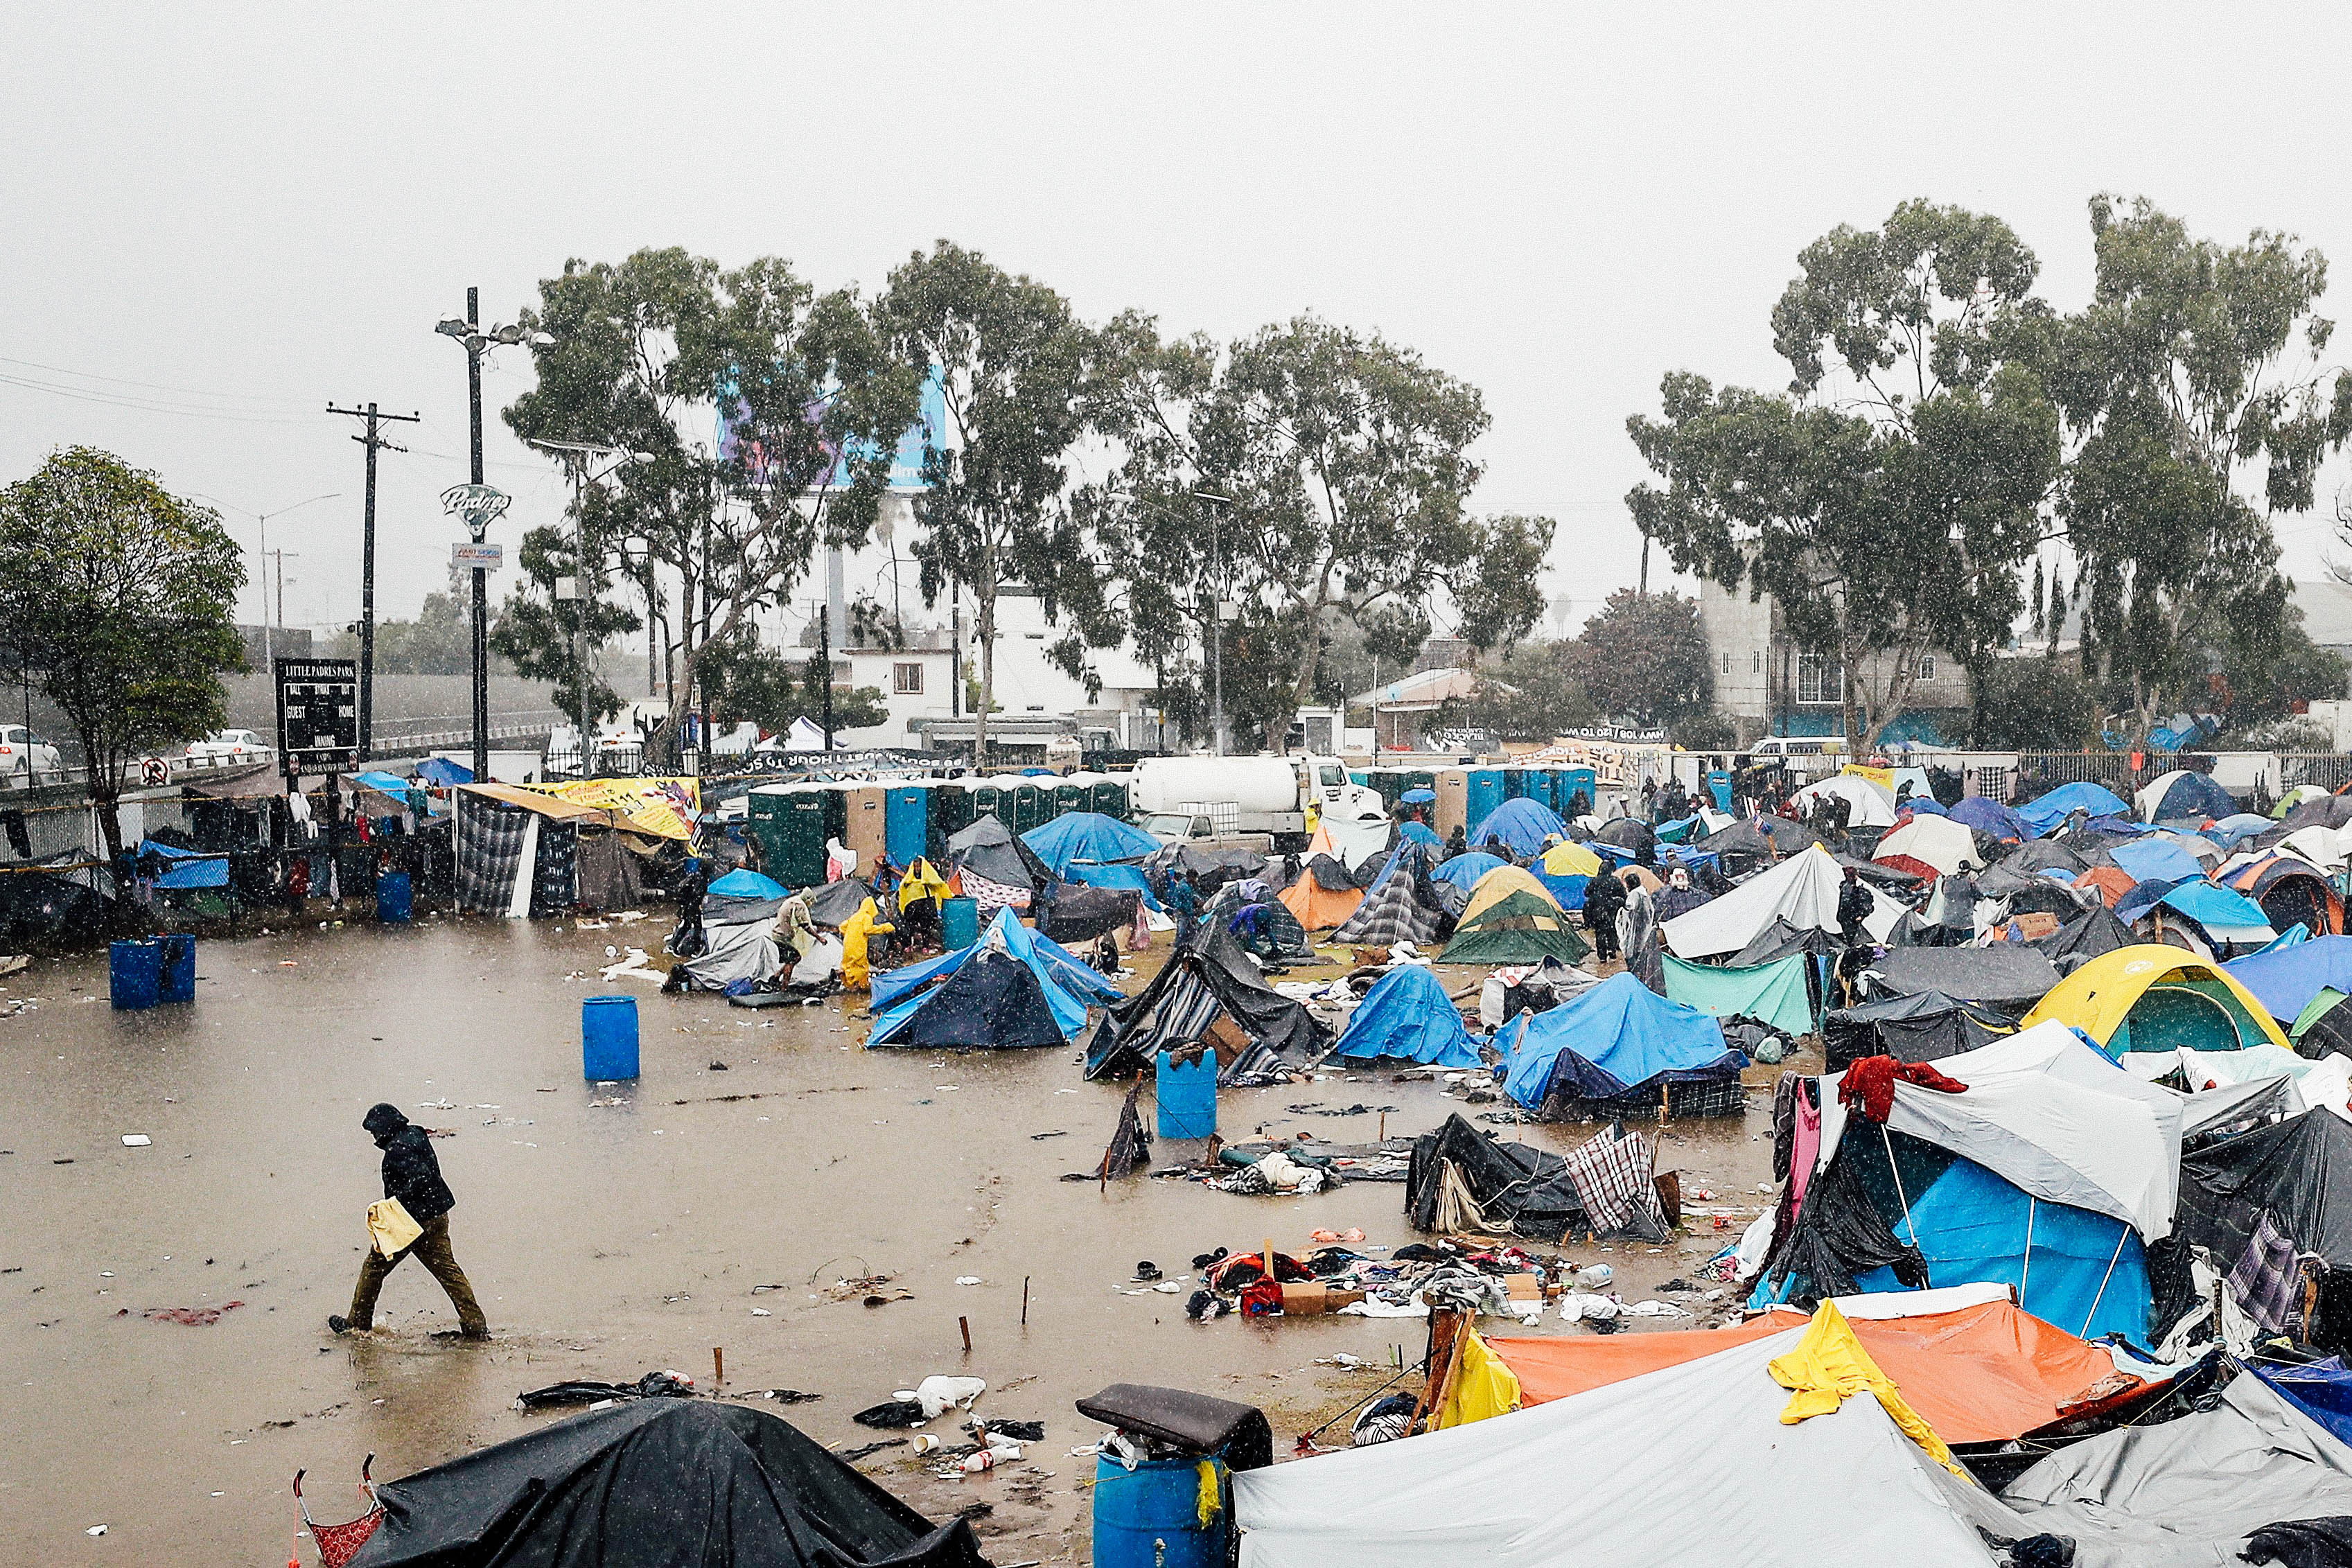 A person walks through a tent encampment flooded by rain.